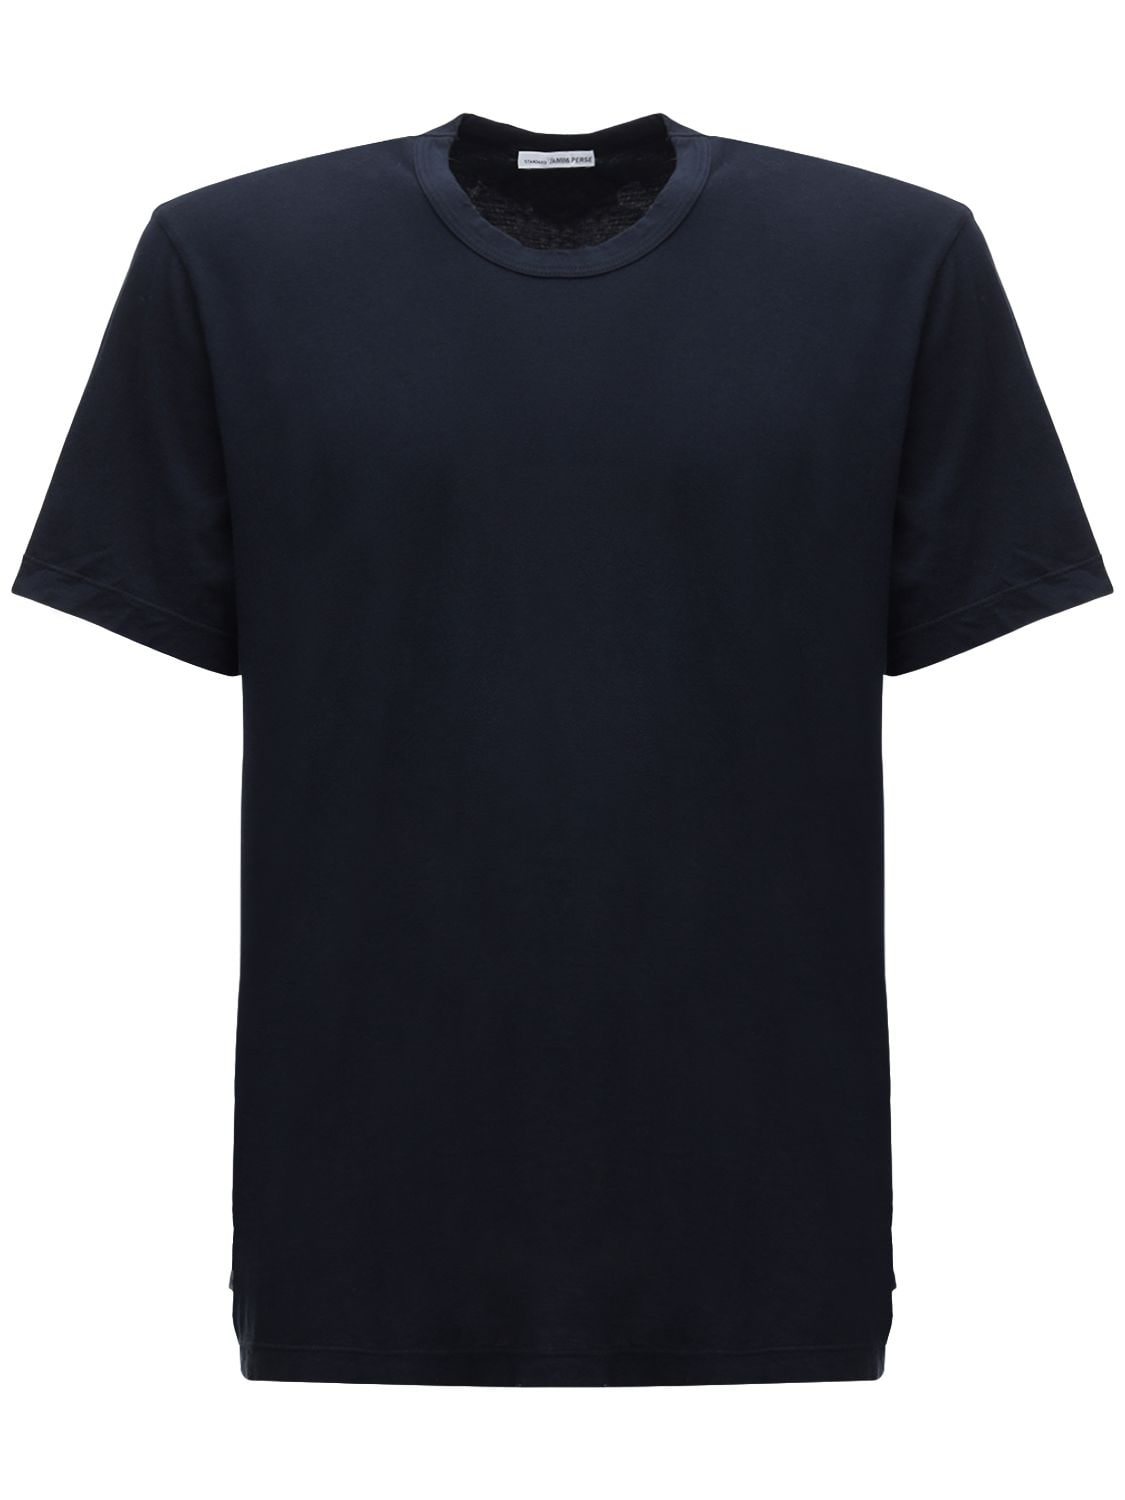 James Perse Lightweight Cotton Jersey T-shirt In Deep | ModeSens